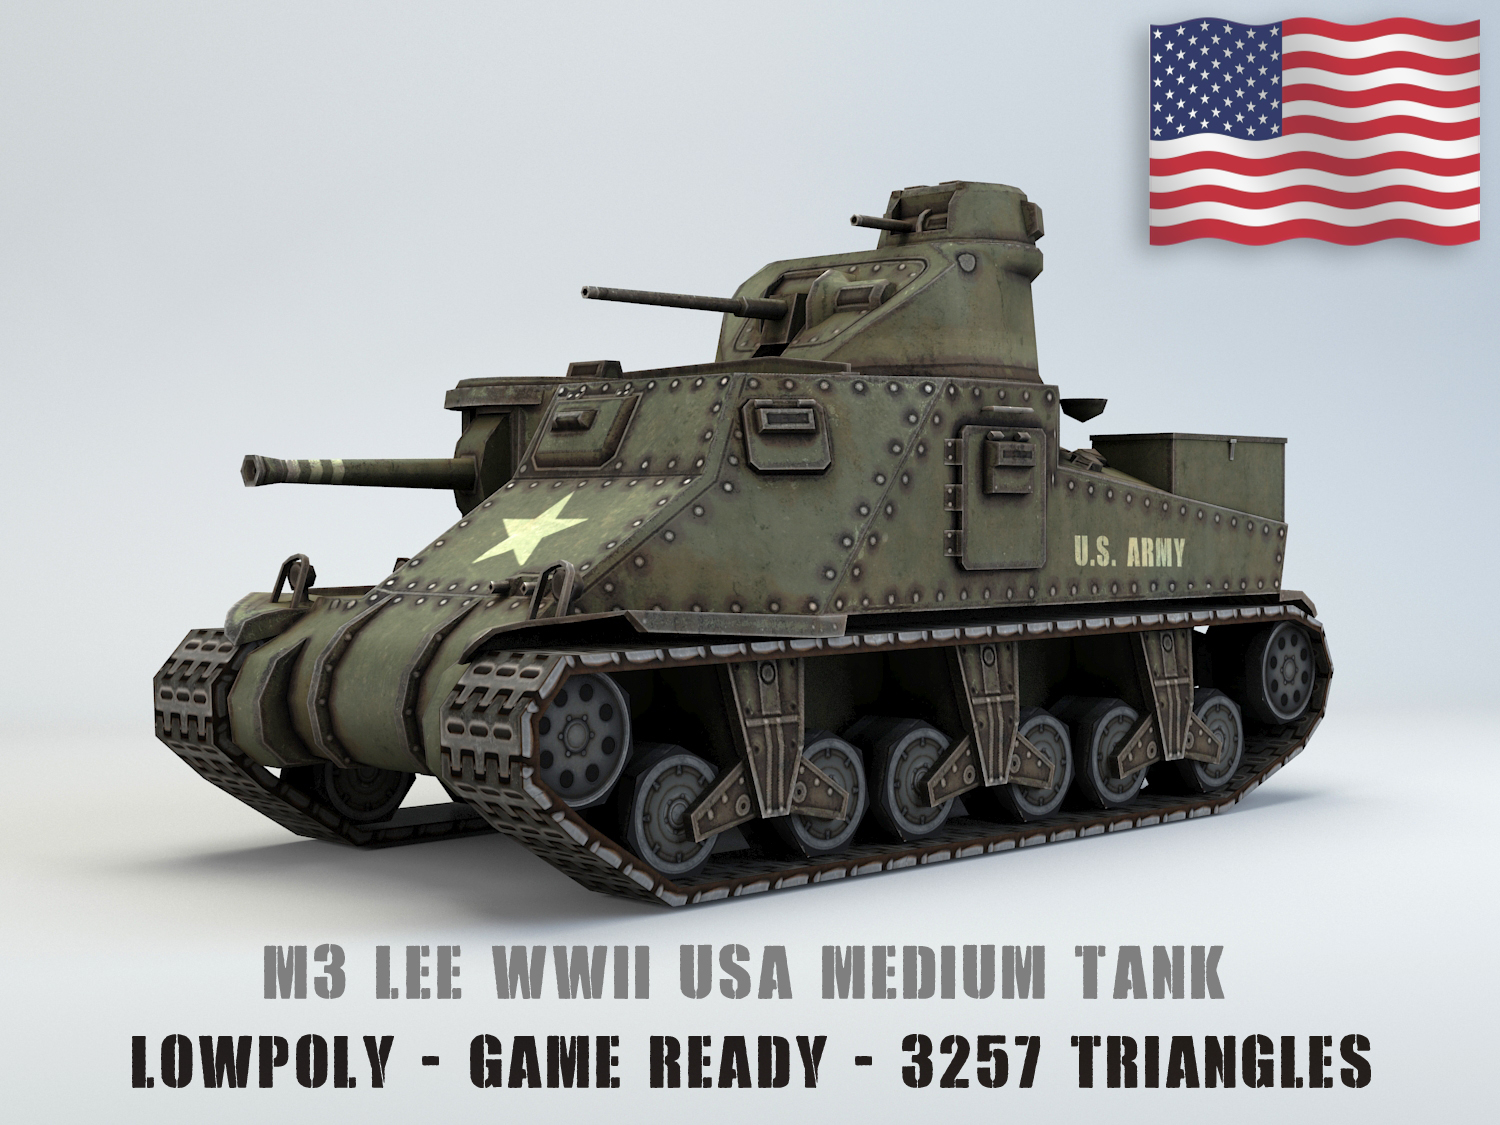 M3 Lee Usa Mittlerer Panzer Lowpoly